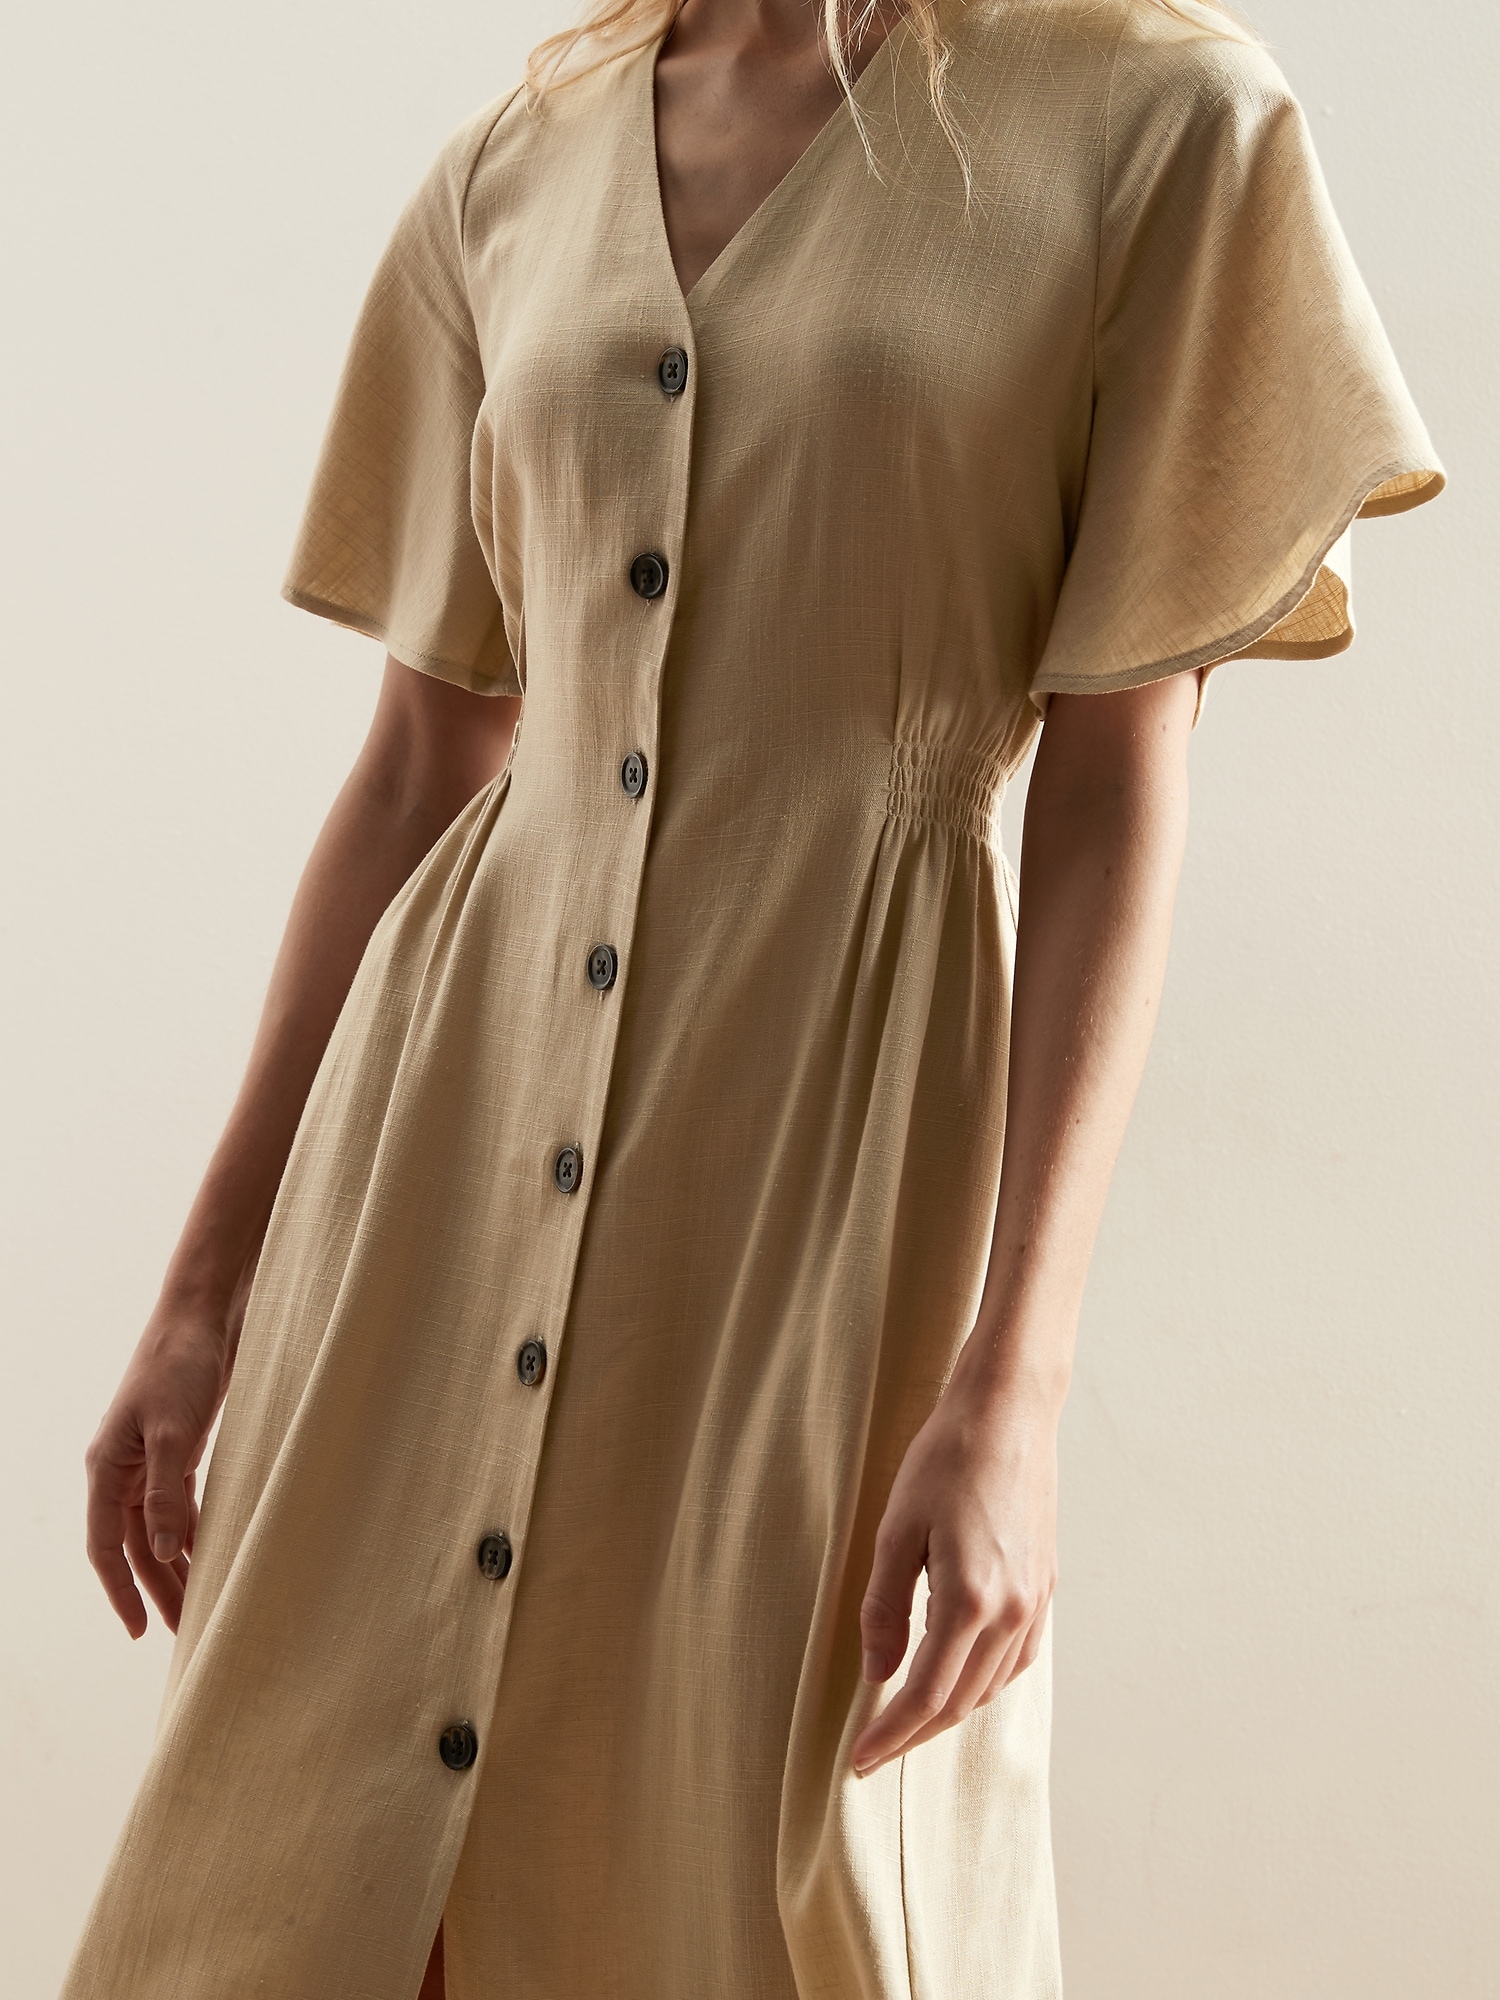 Linen Shirt Dress